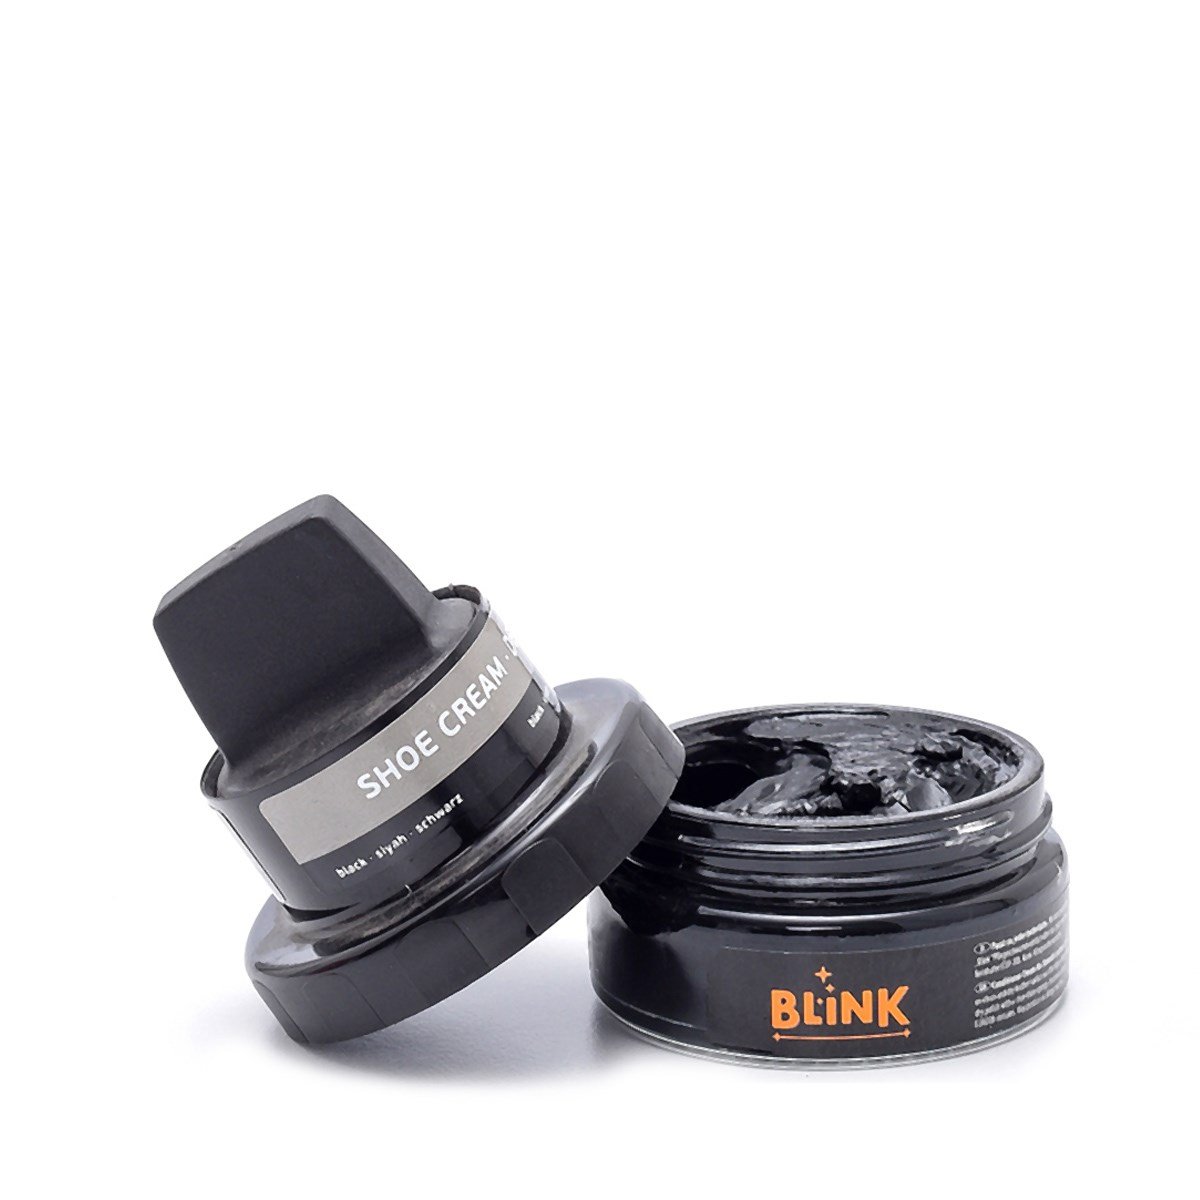 Blink Deri Boyası Siyah Bakım Ürünleri Boya | sofiabaldi.com